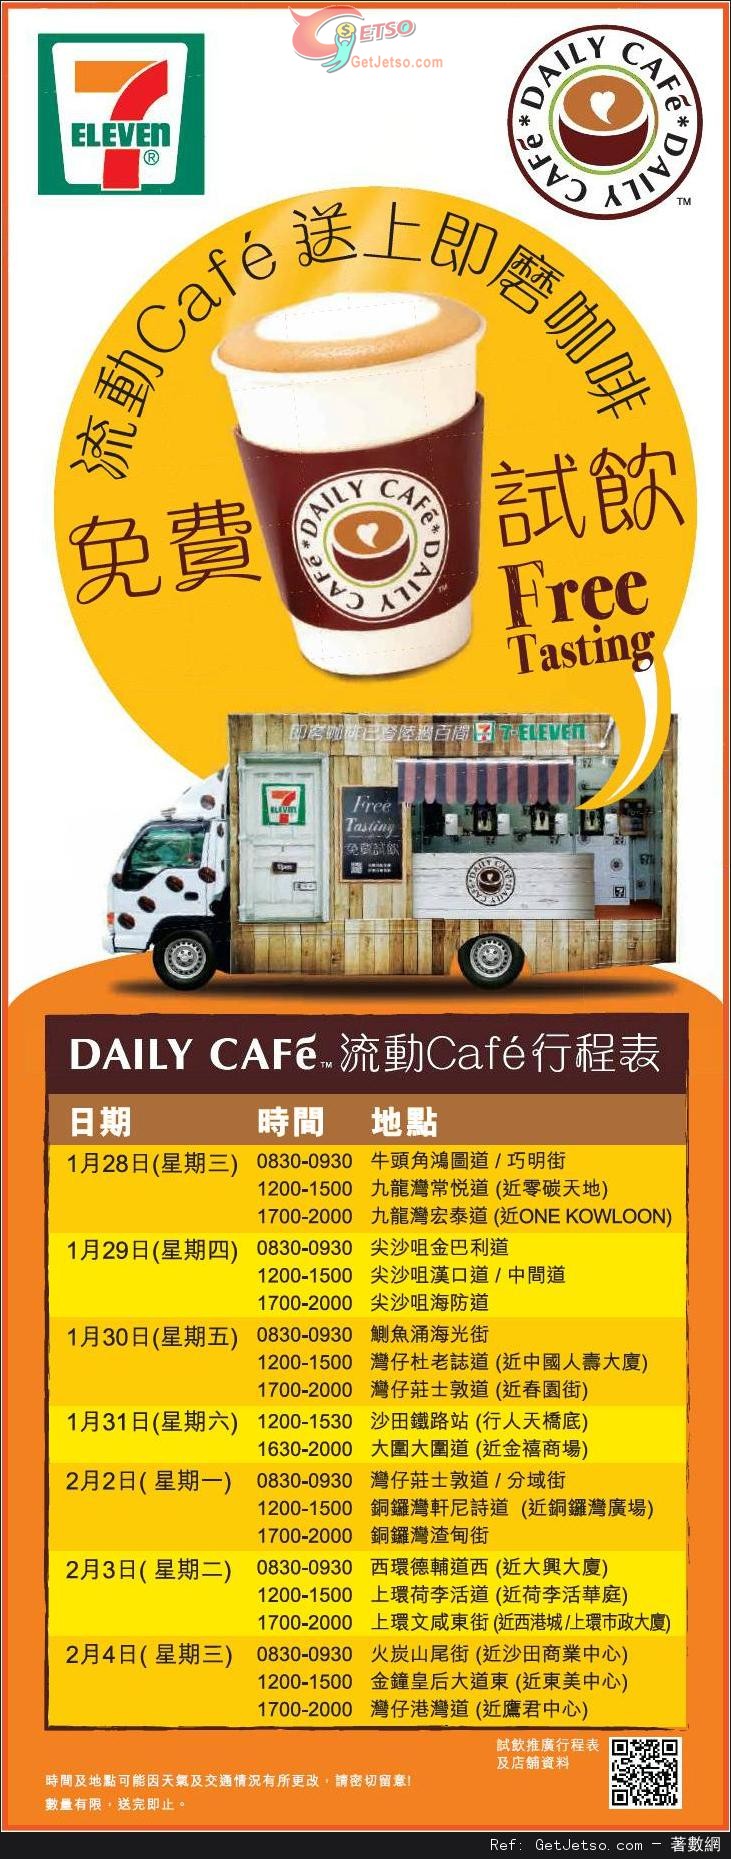 7-Eleven Daily Cafe 試飲流動車即磨咖啡免費試飲優惠(至15年2月4日)圖片1